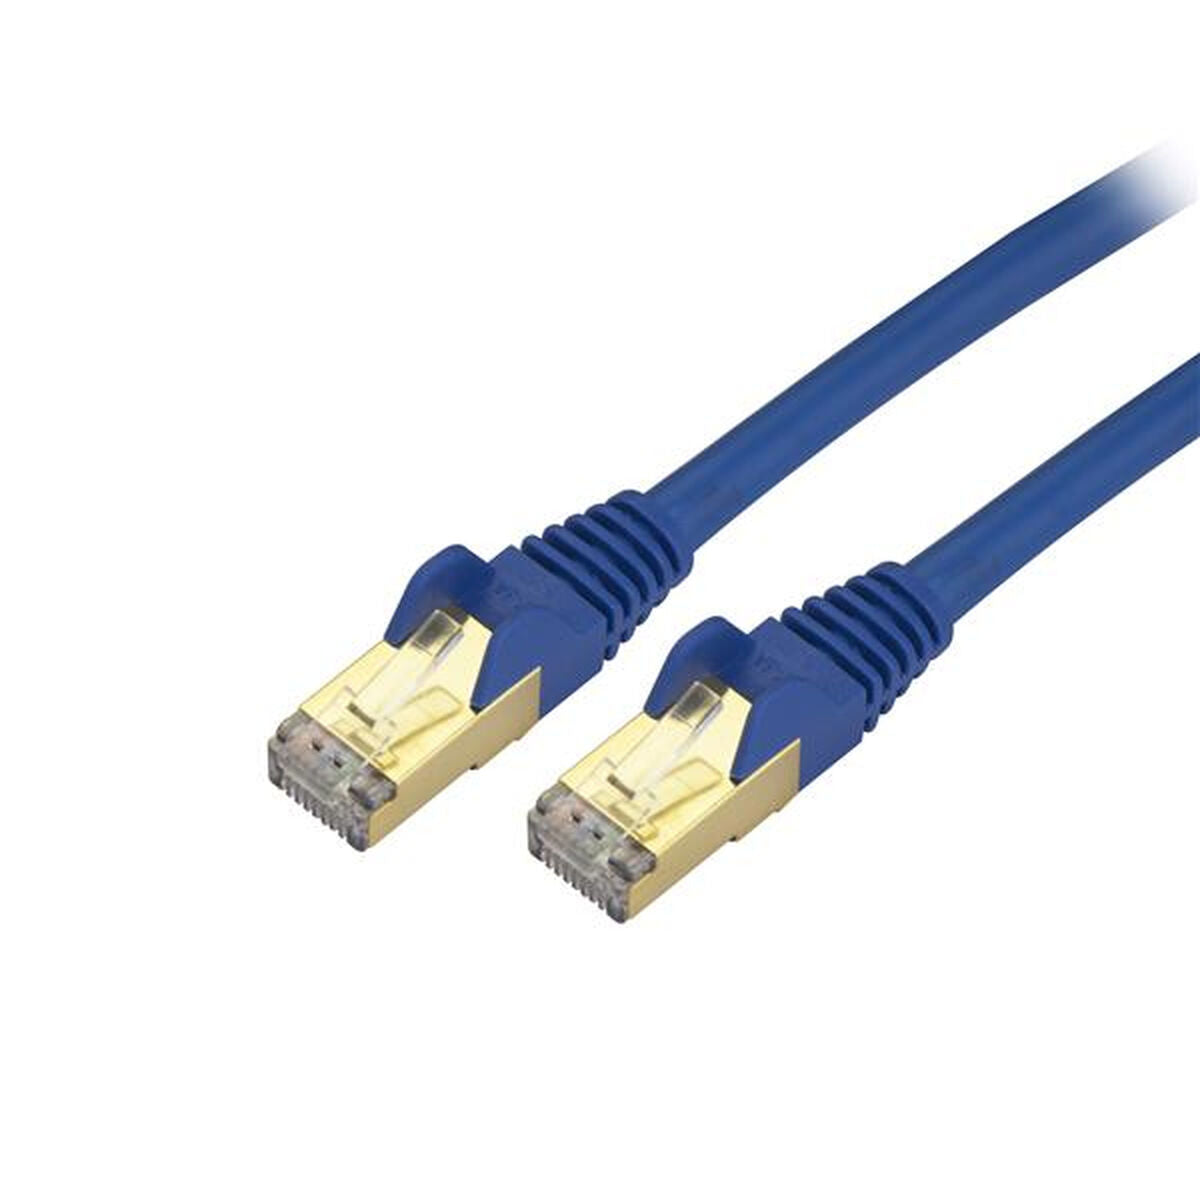 UTP Category 6 Rigid Network Cable Startech C6ASPAT10BL 3 m Black Blue-0